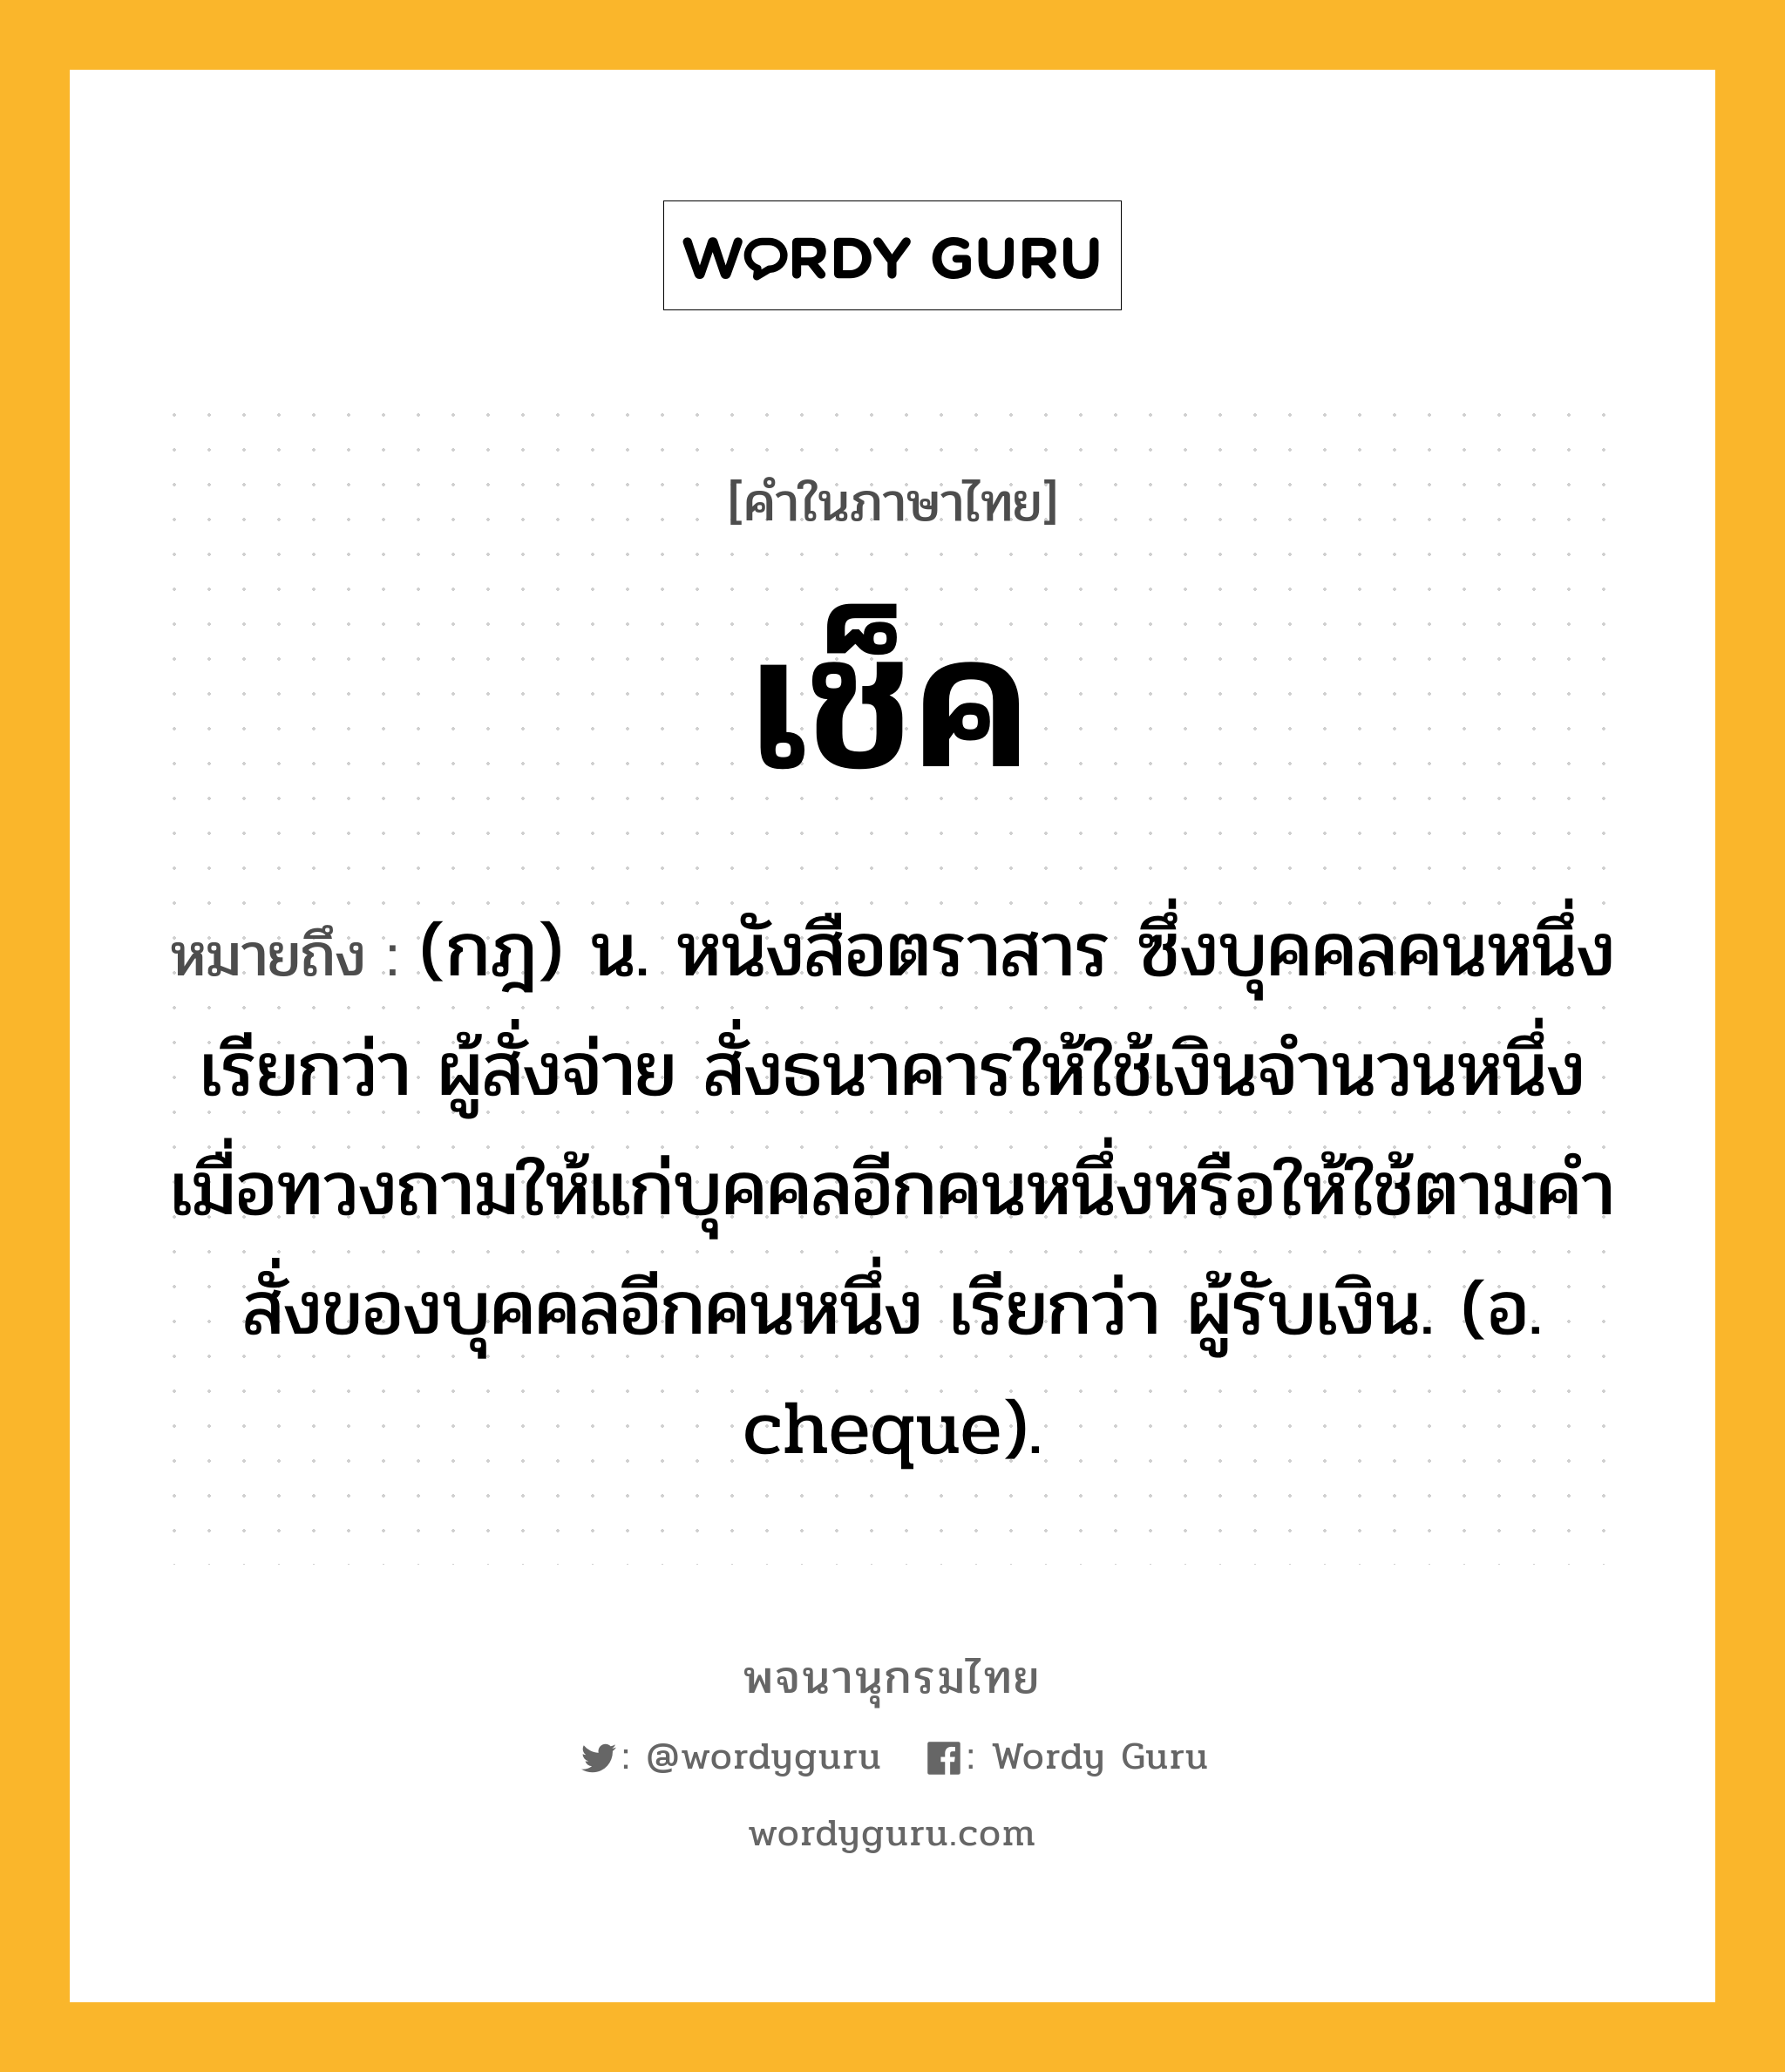 เช็ค หมายถึงอะไร?, คำในภาษาไทย เช็ค หมายถึง (กฎ) น. หนังสือตราสาร ซึ่งบุคคลคนหนึ่ง เรียกว่า ผู้สั่งจ่าย สั่งธนาคารให้ใช้เงินจํานวนหนึ่งเมื่อทวงถามให้แก่บุคคลอีกคนหนึ่งหรือให้ใช้ตามคําสั่งของบุคคลอีกคนหนึ่ง เรียกว่า ผู้รับเงิน. (อ. cheque).